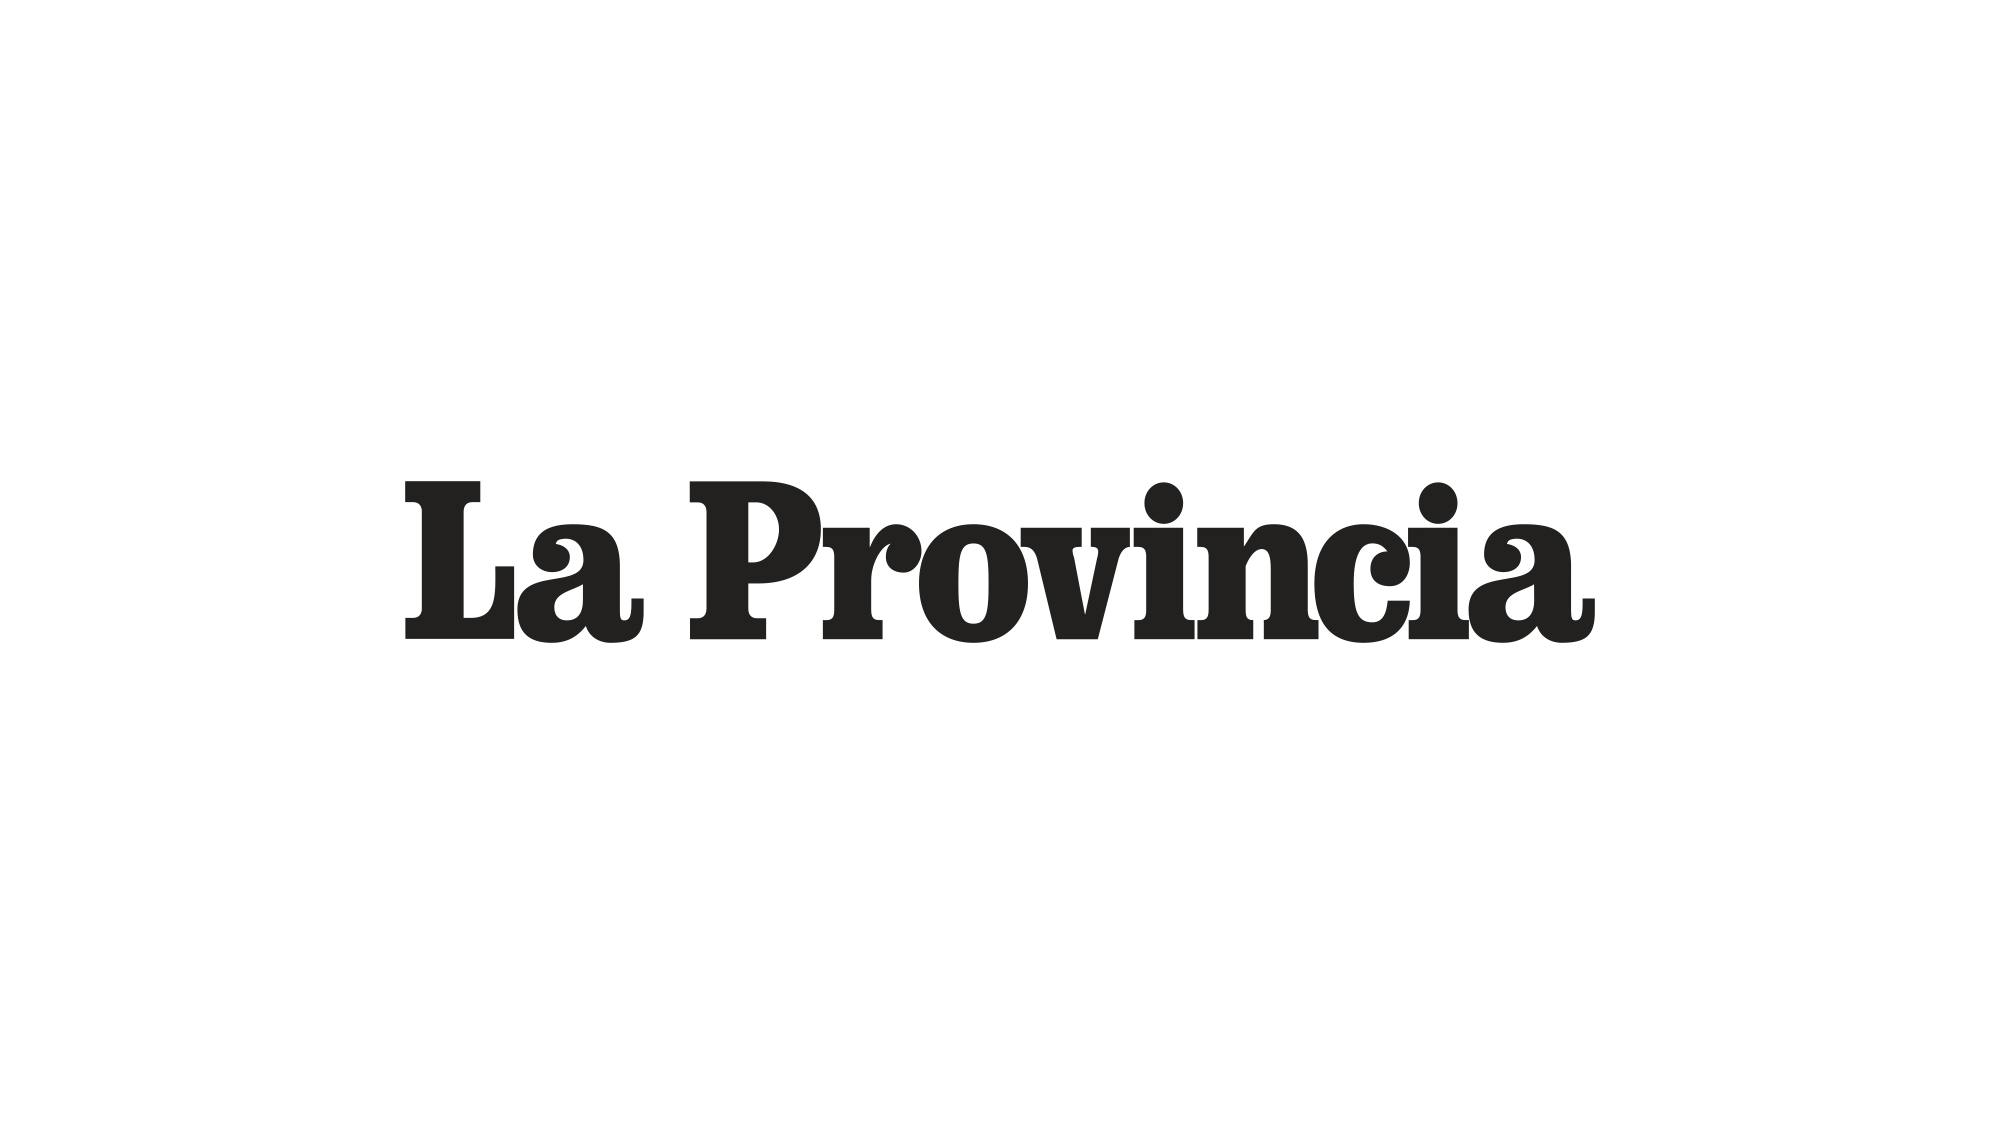 Logo del quotidiano "La Provincia di Como": scritta nera "La Provincia" su sfondo bianco.